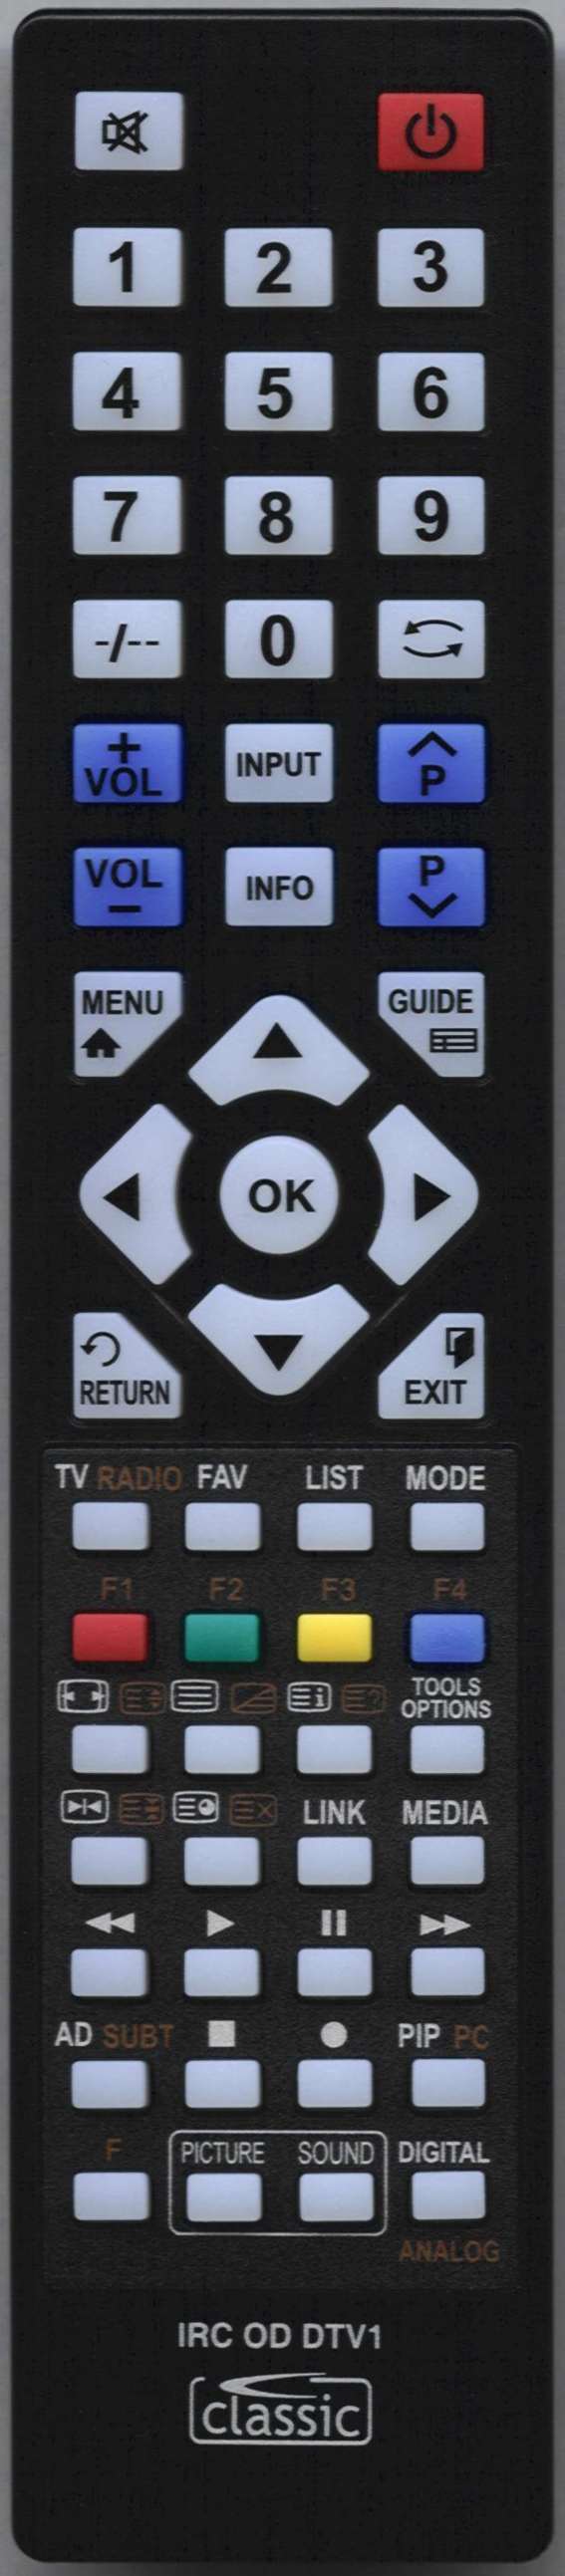 UMC L22A01S01G796 Remote Control